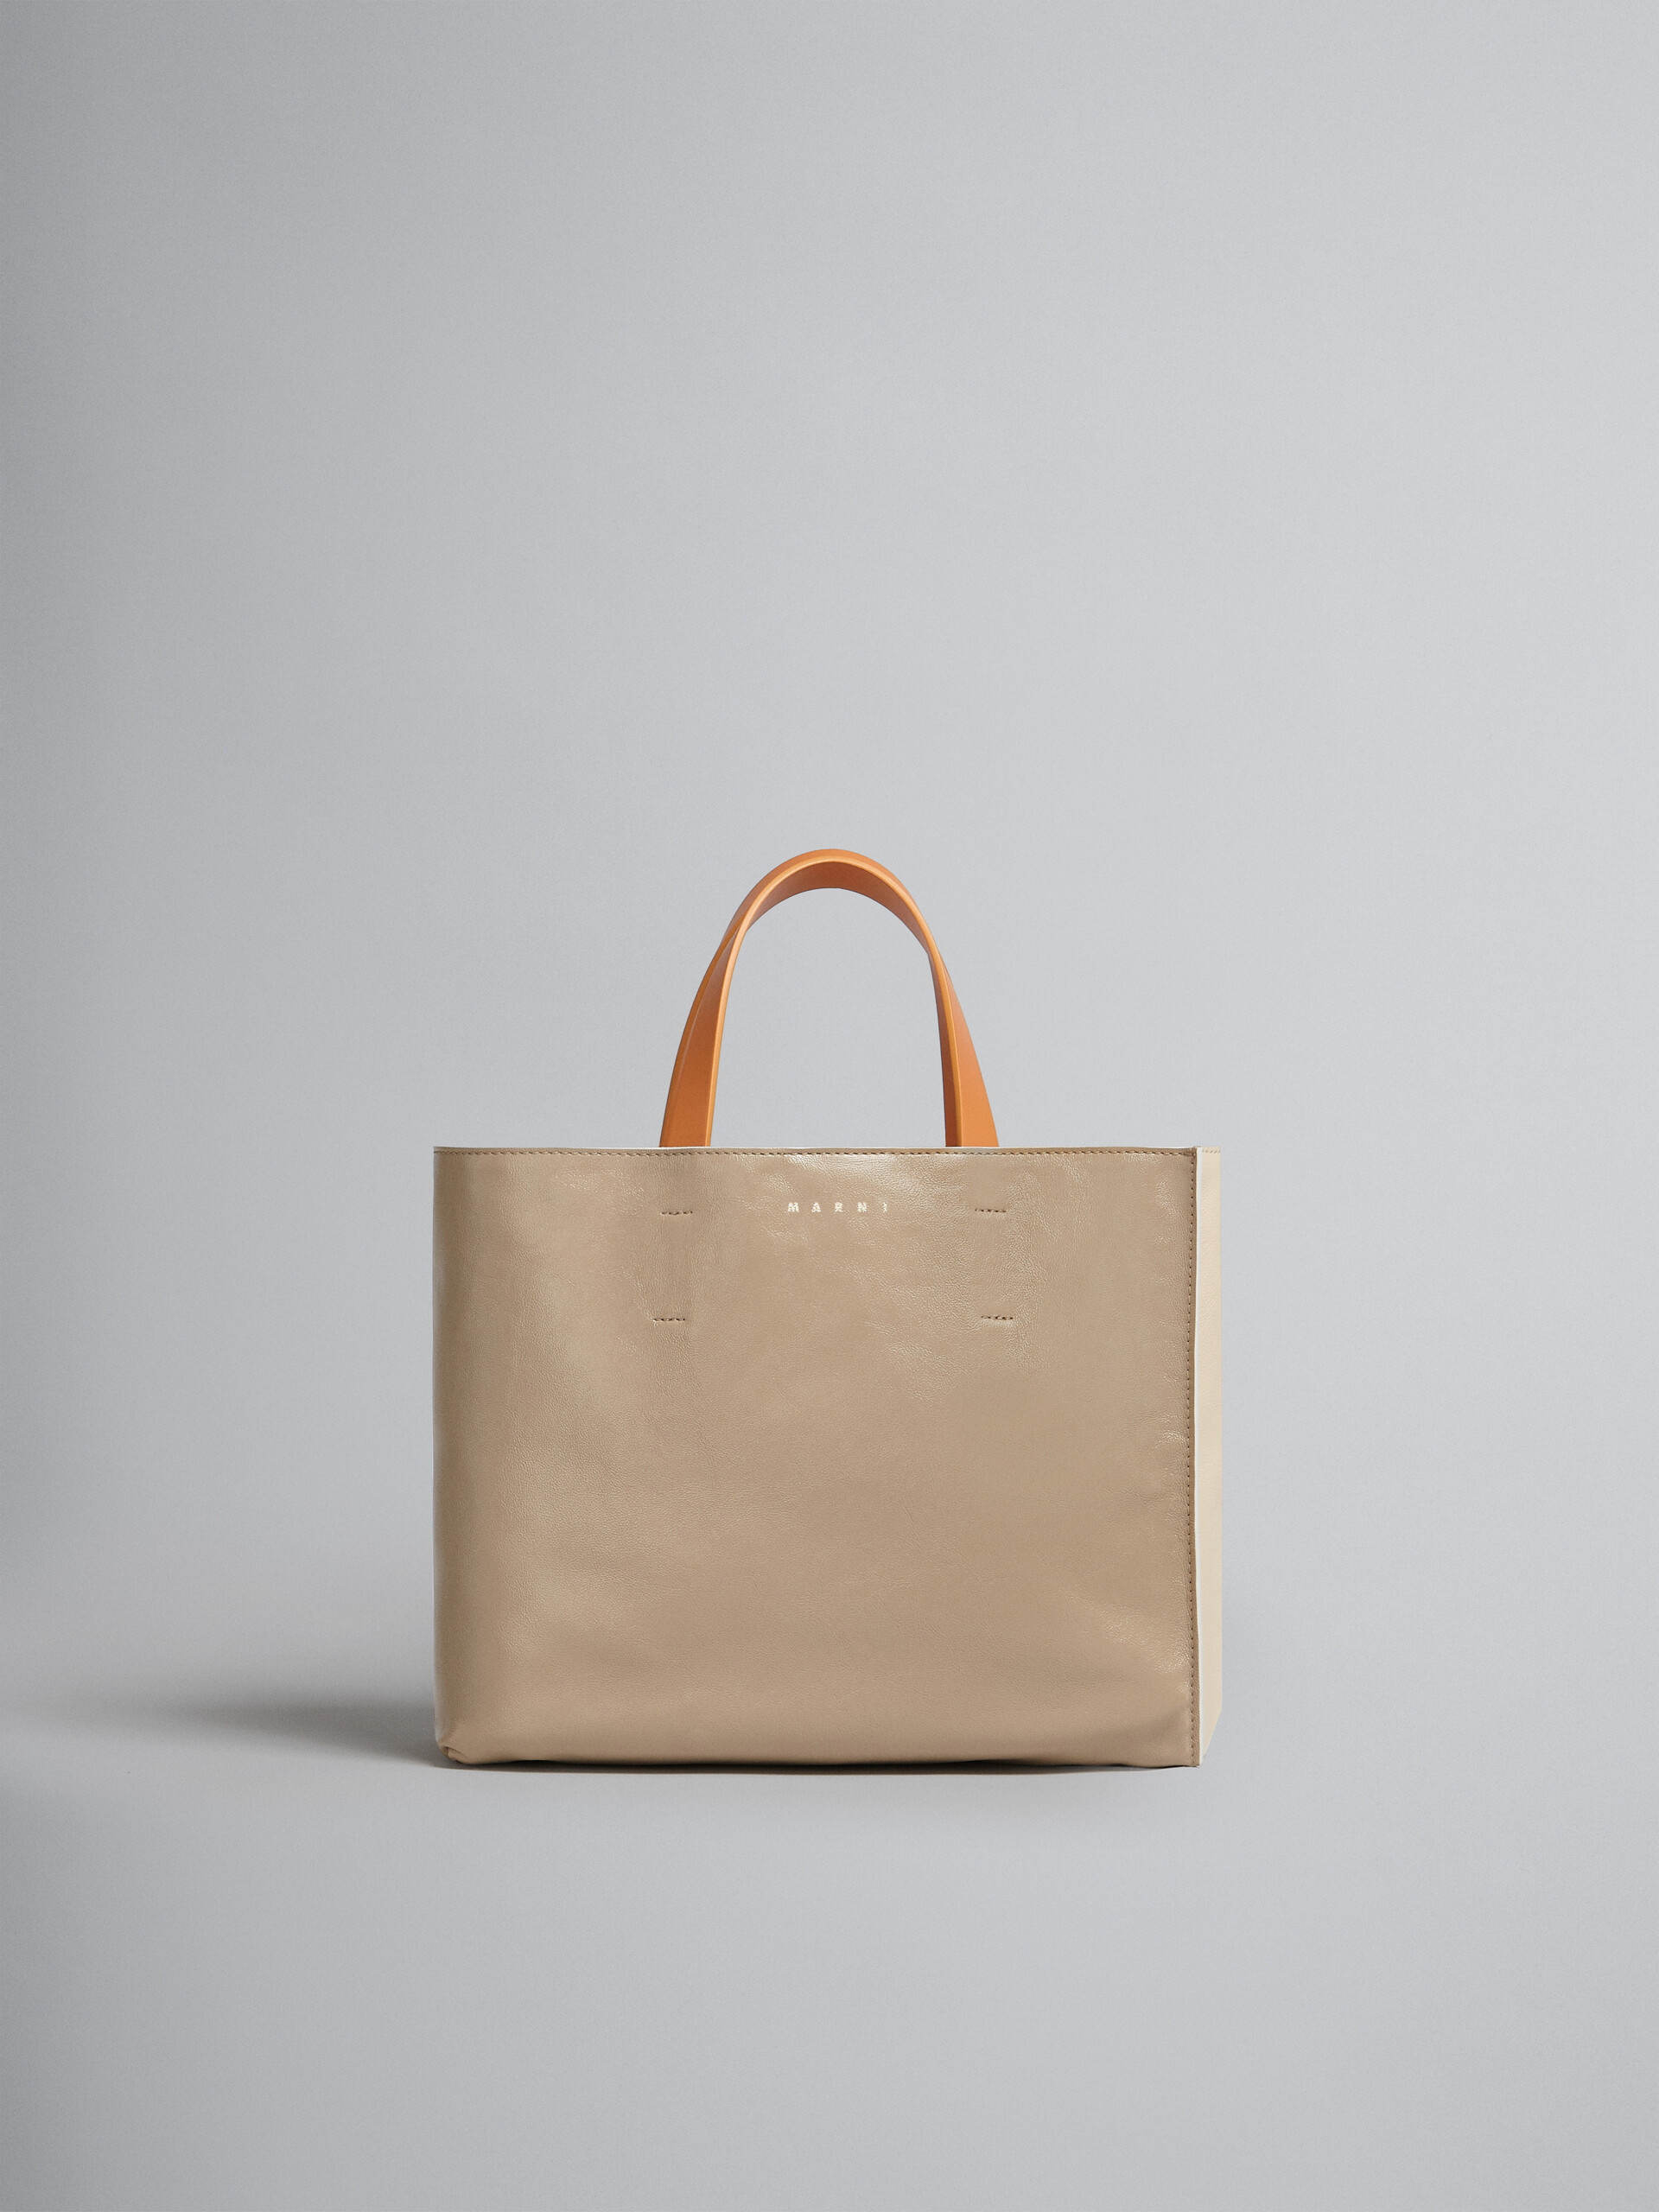 Museo Soft Bag E/W in pelle grigio-verde e beige - Borse shopping - Image 1